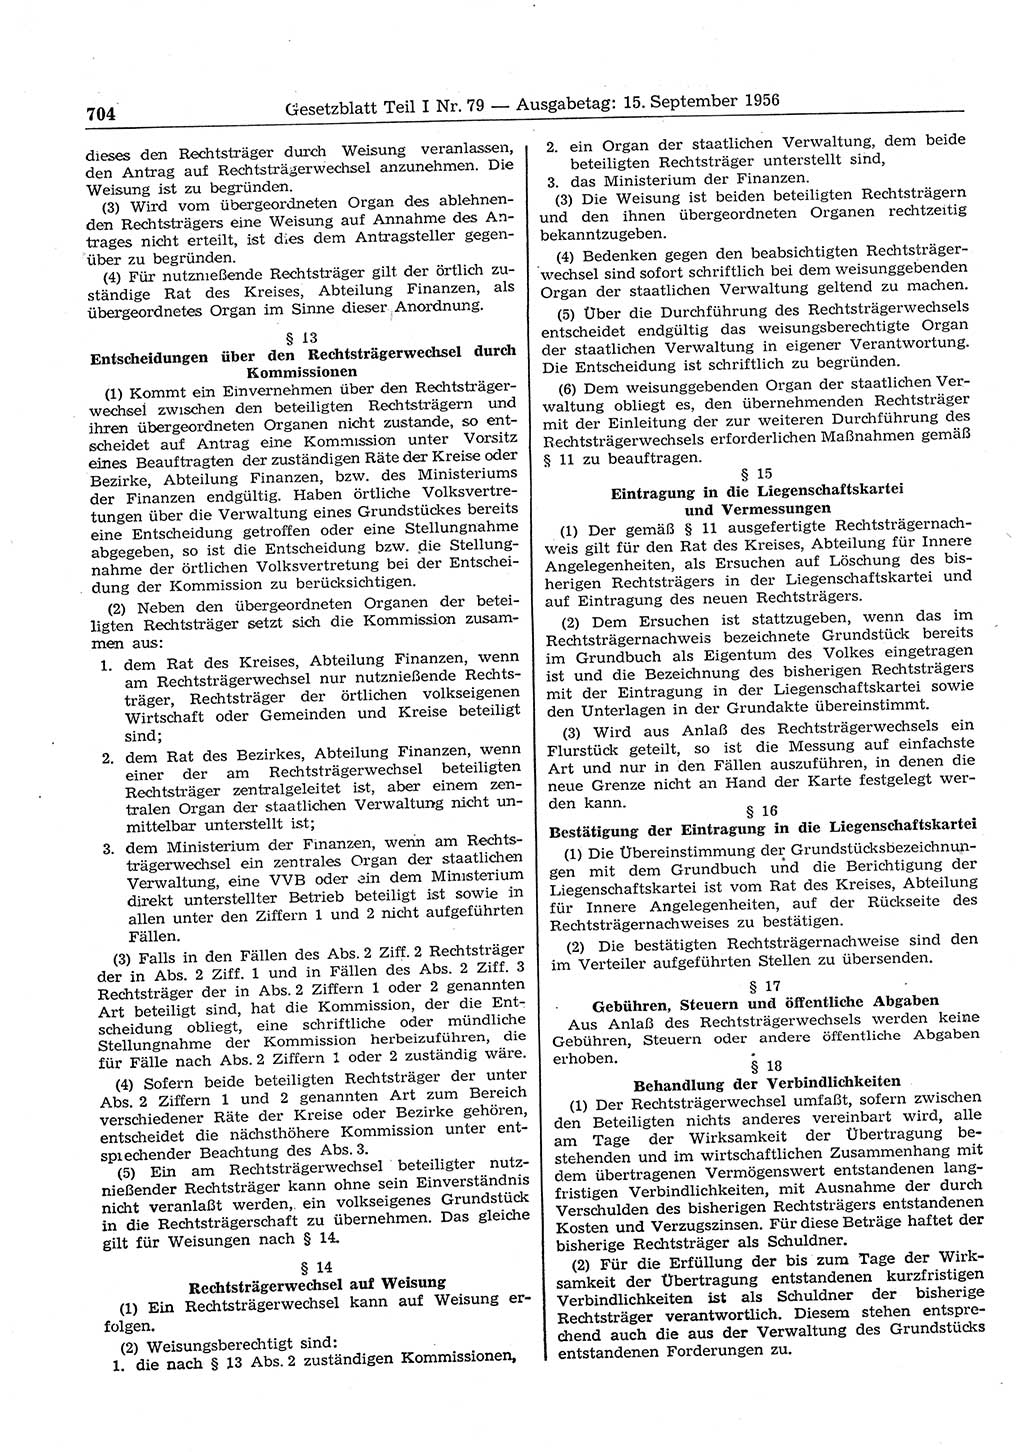 Gesetzblatt (GBl.) der Deutschen Demokratischen Republik (DDR) Teil Ⅰ 1956, Seite 704 (GBl. DDR Ⅰ 1956, S. 704)